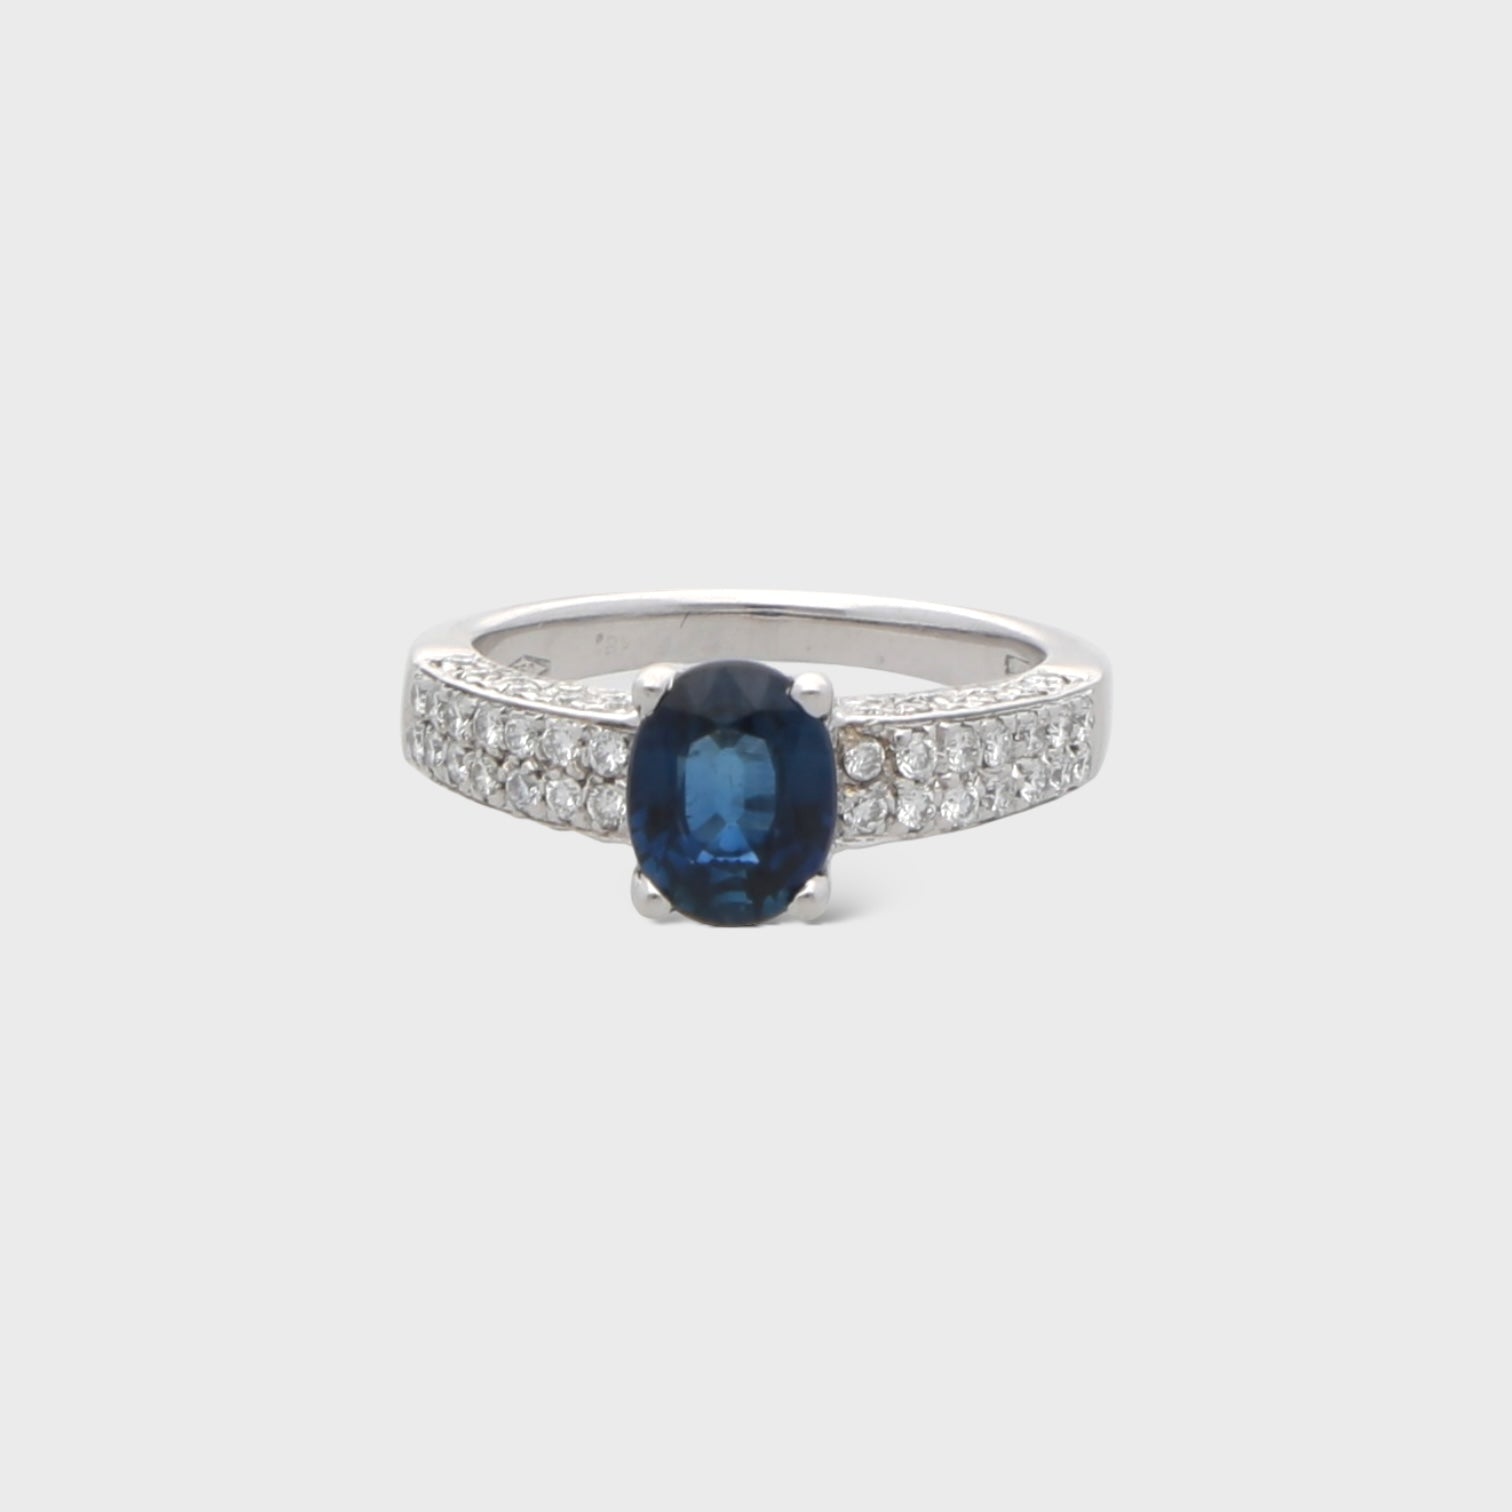 Second Hand Saphir-Diamant-Ring jetzt online kaufen auf kaleaz.